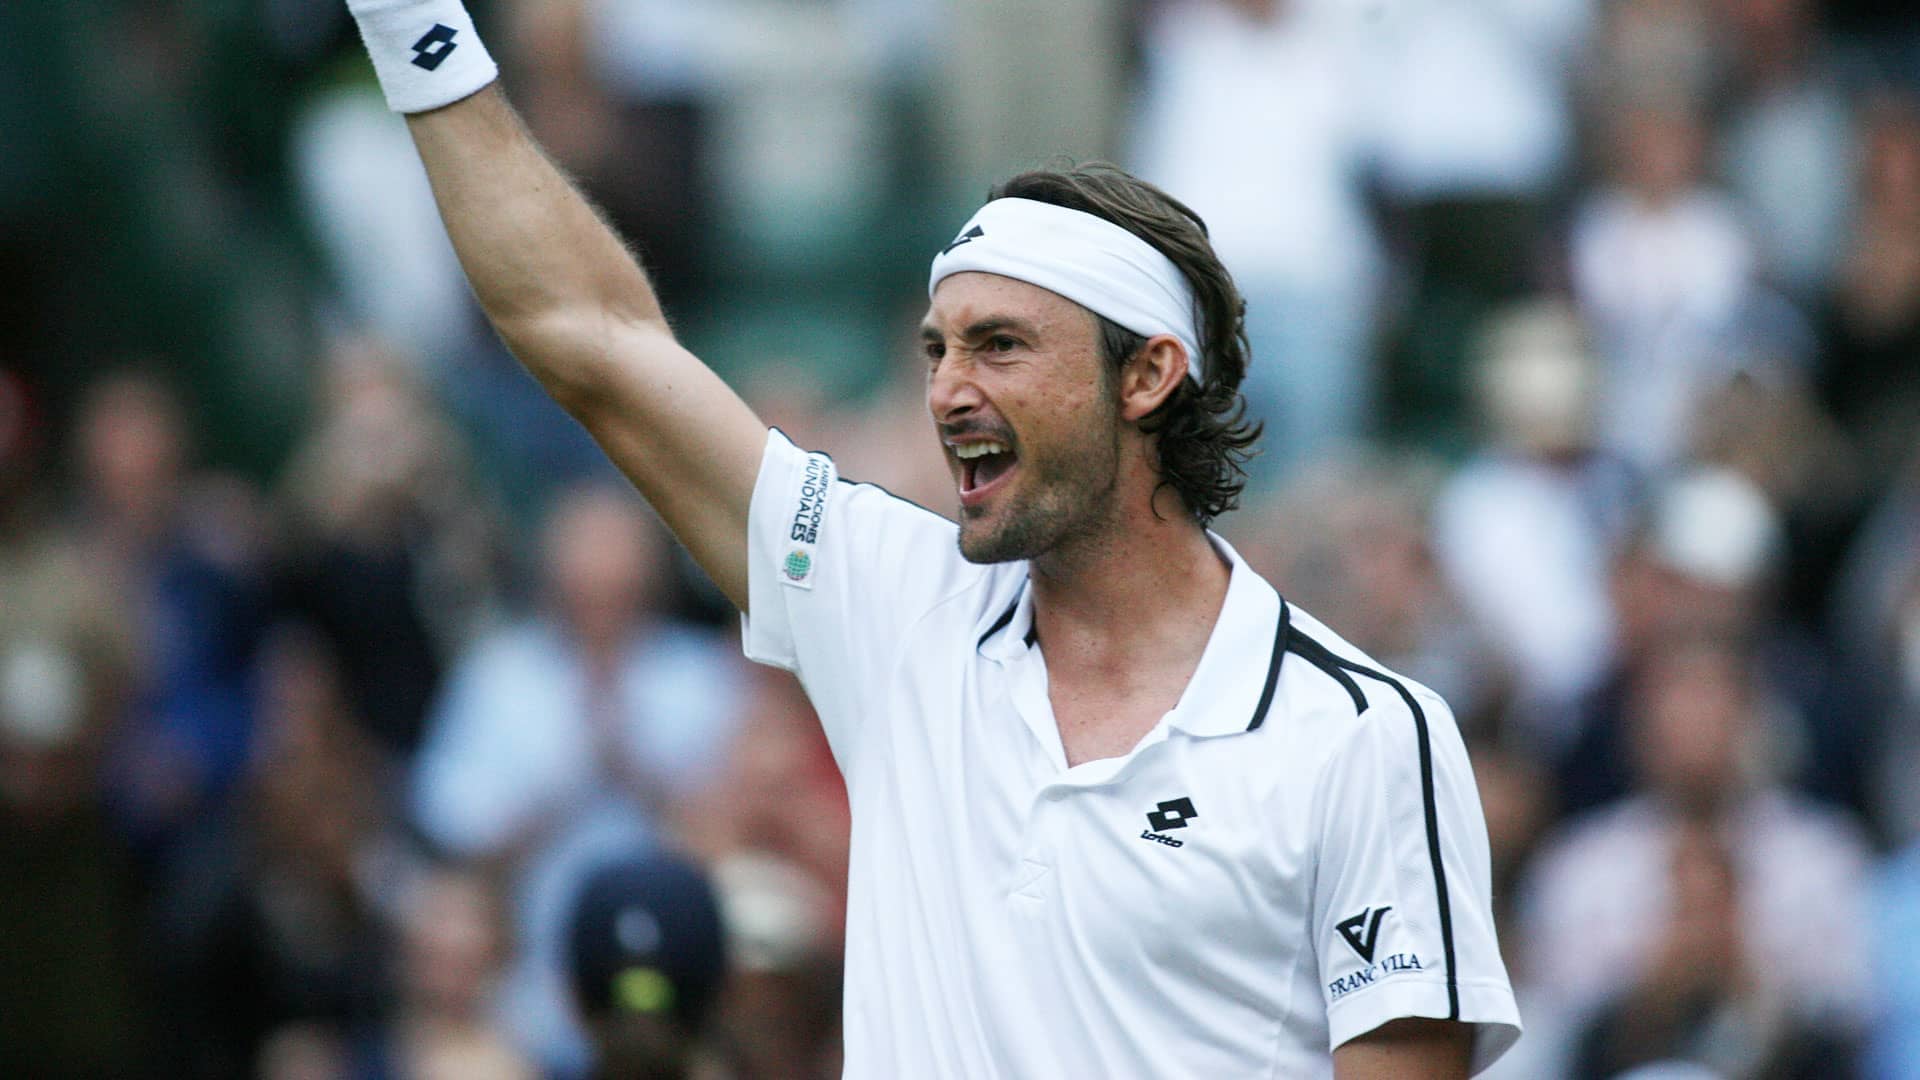 <a href='https://www.atptour.com/en/players/juan-carlos-ferrero/f316/overview'>Juan Carlos Ferrero</a> at 2009 <a href='https://www.atptour.com/en/tournaments/wimbledon/540/overview'>Wimbledon</a>